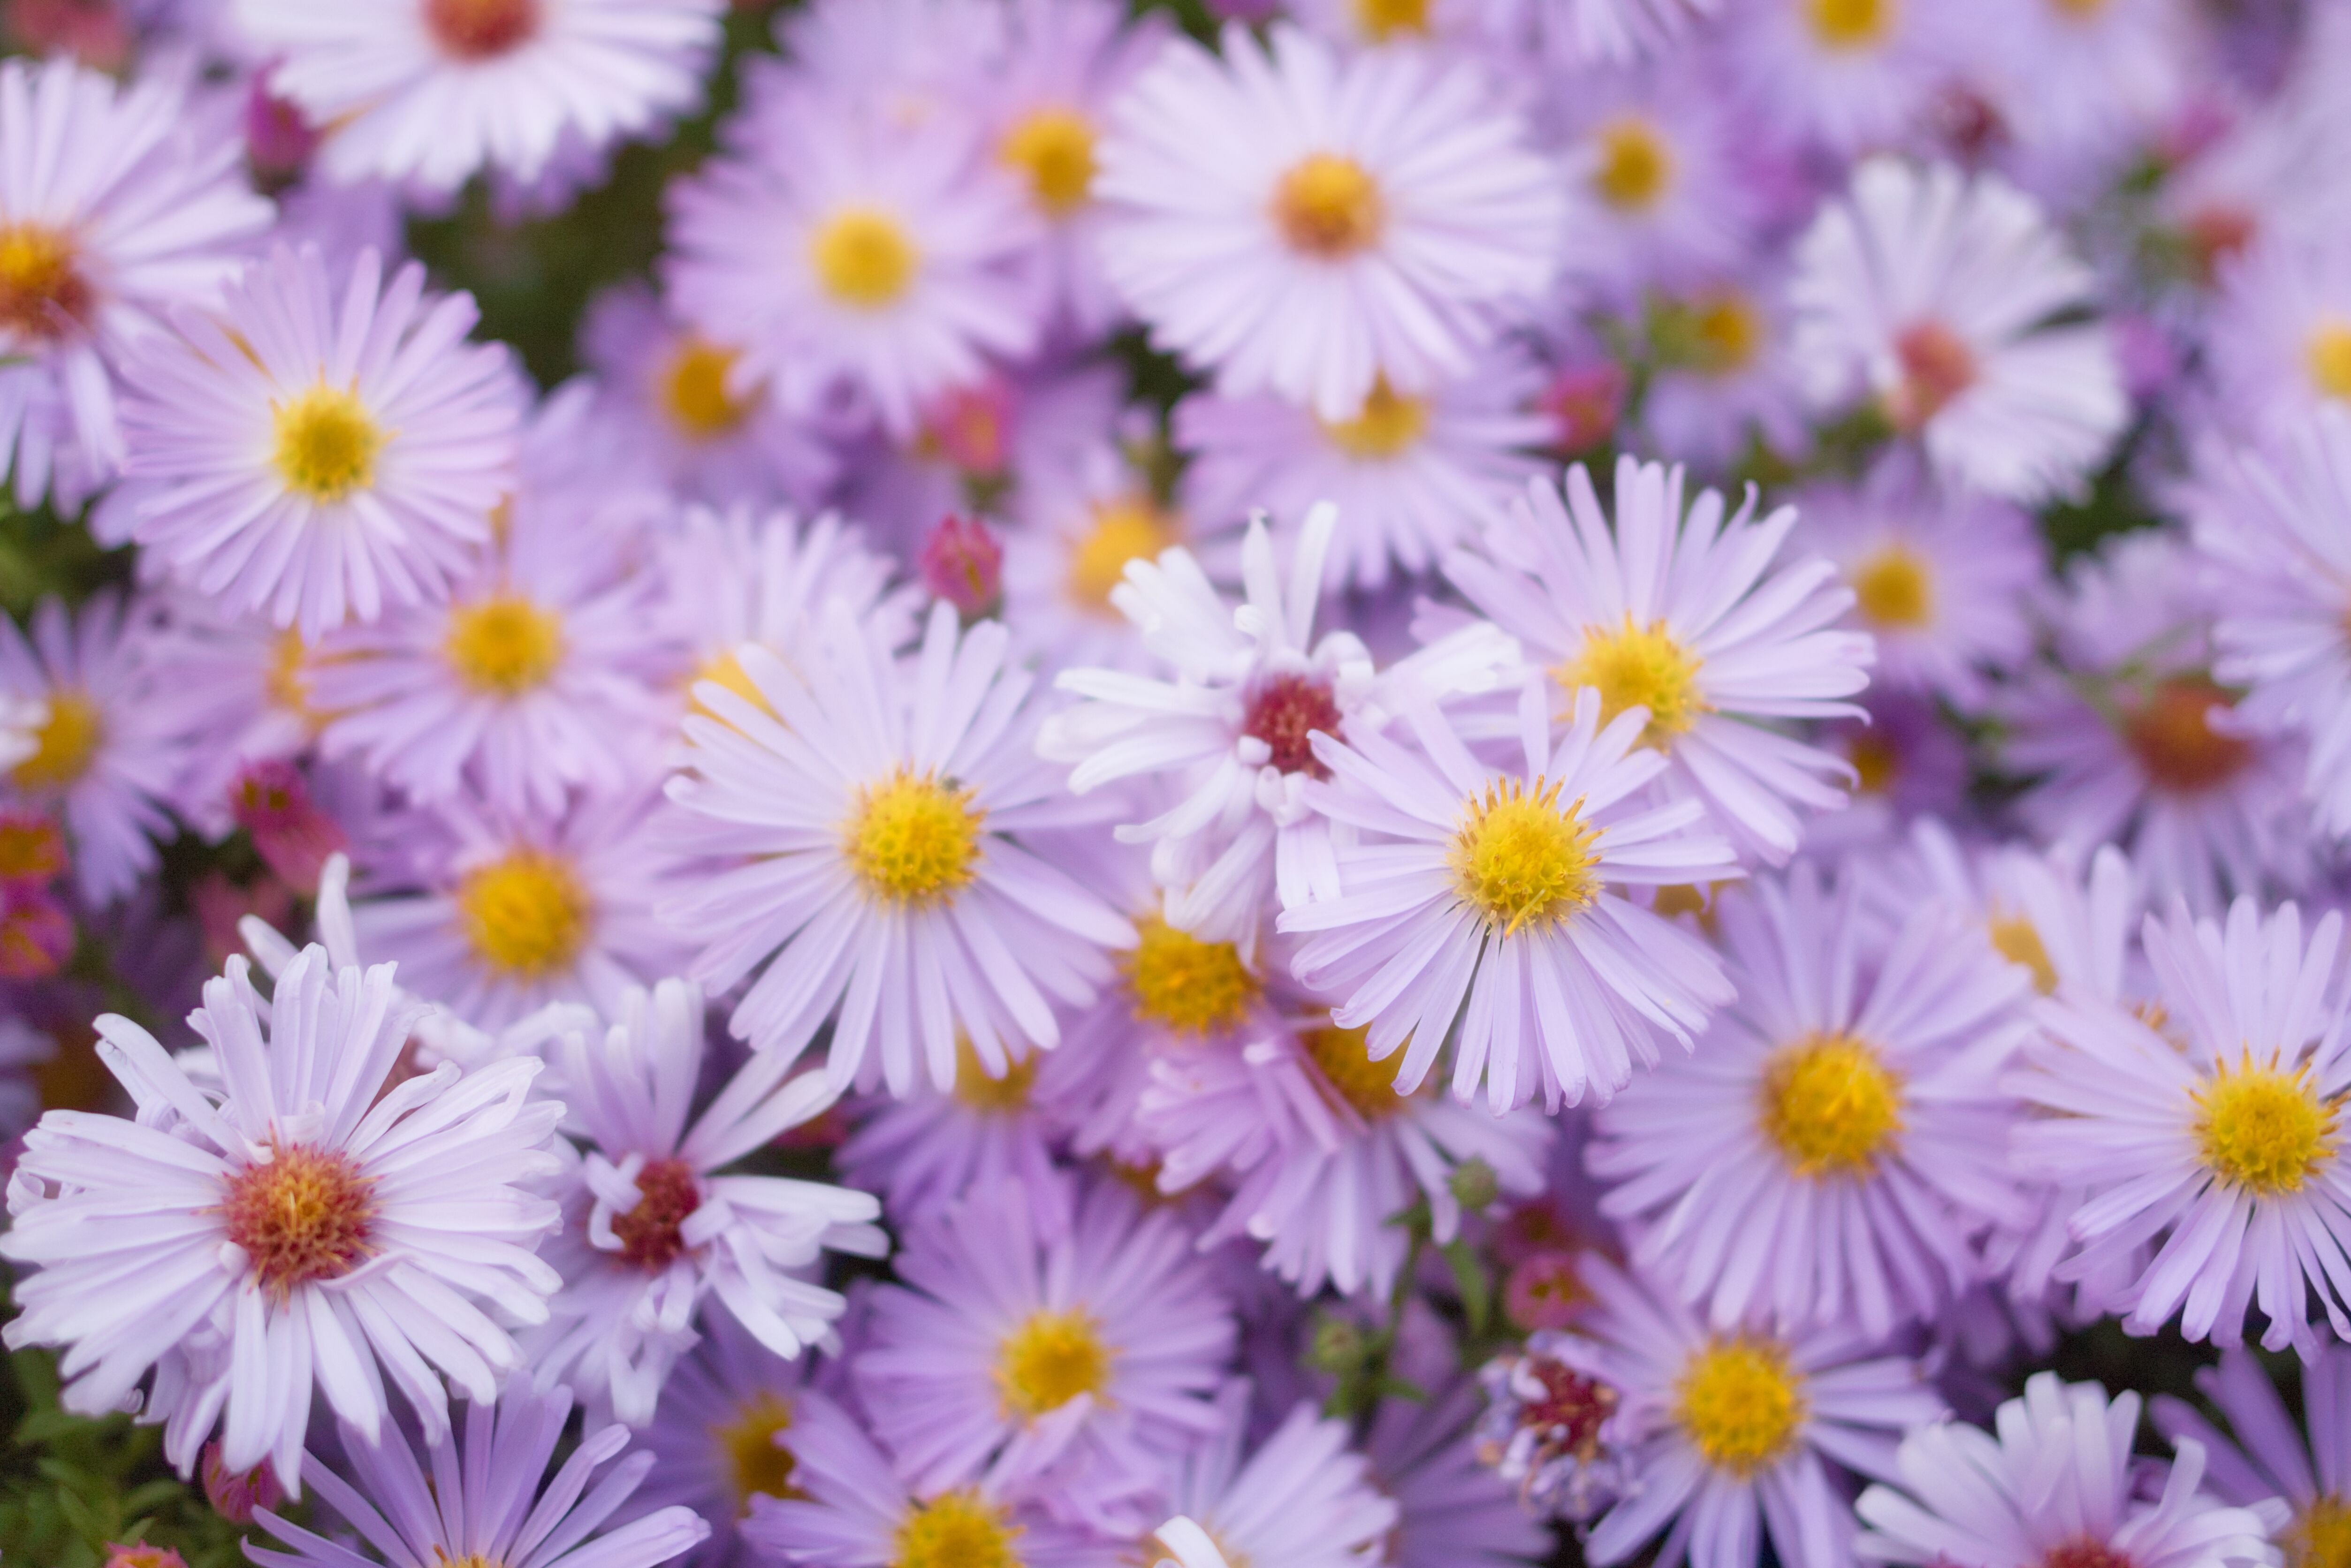 紫色雏菊在焦点摄影高清壁纸,高清图片,摄影-纯色壁纸